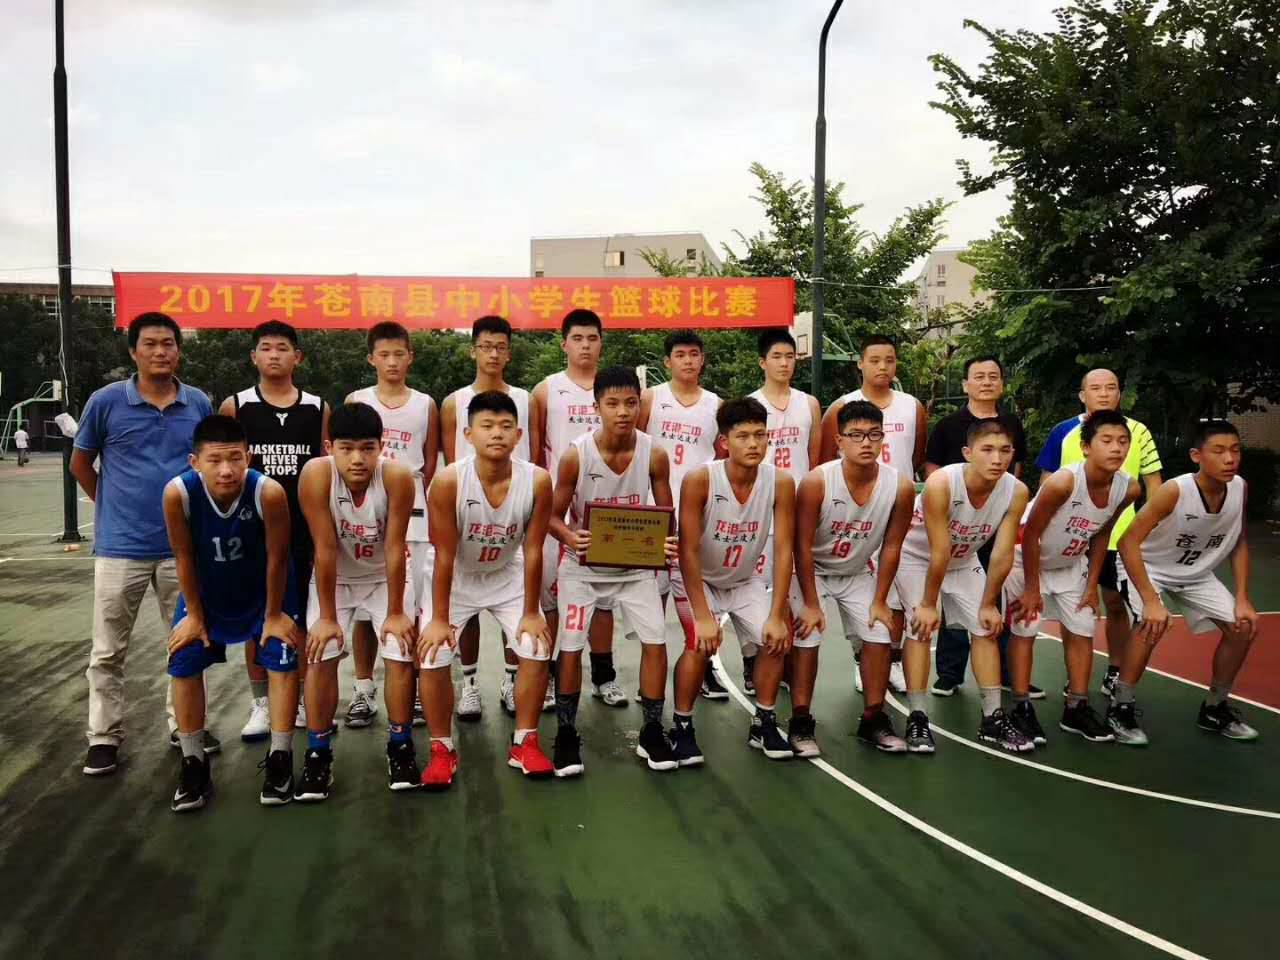 龙港二中学生篮球队再创佳绩,男女篮球队分获冠亚军,其中男子篮球队更